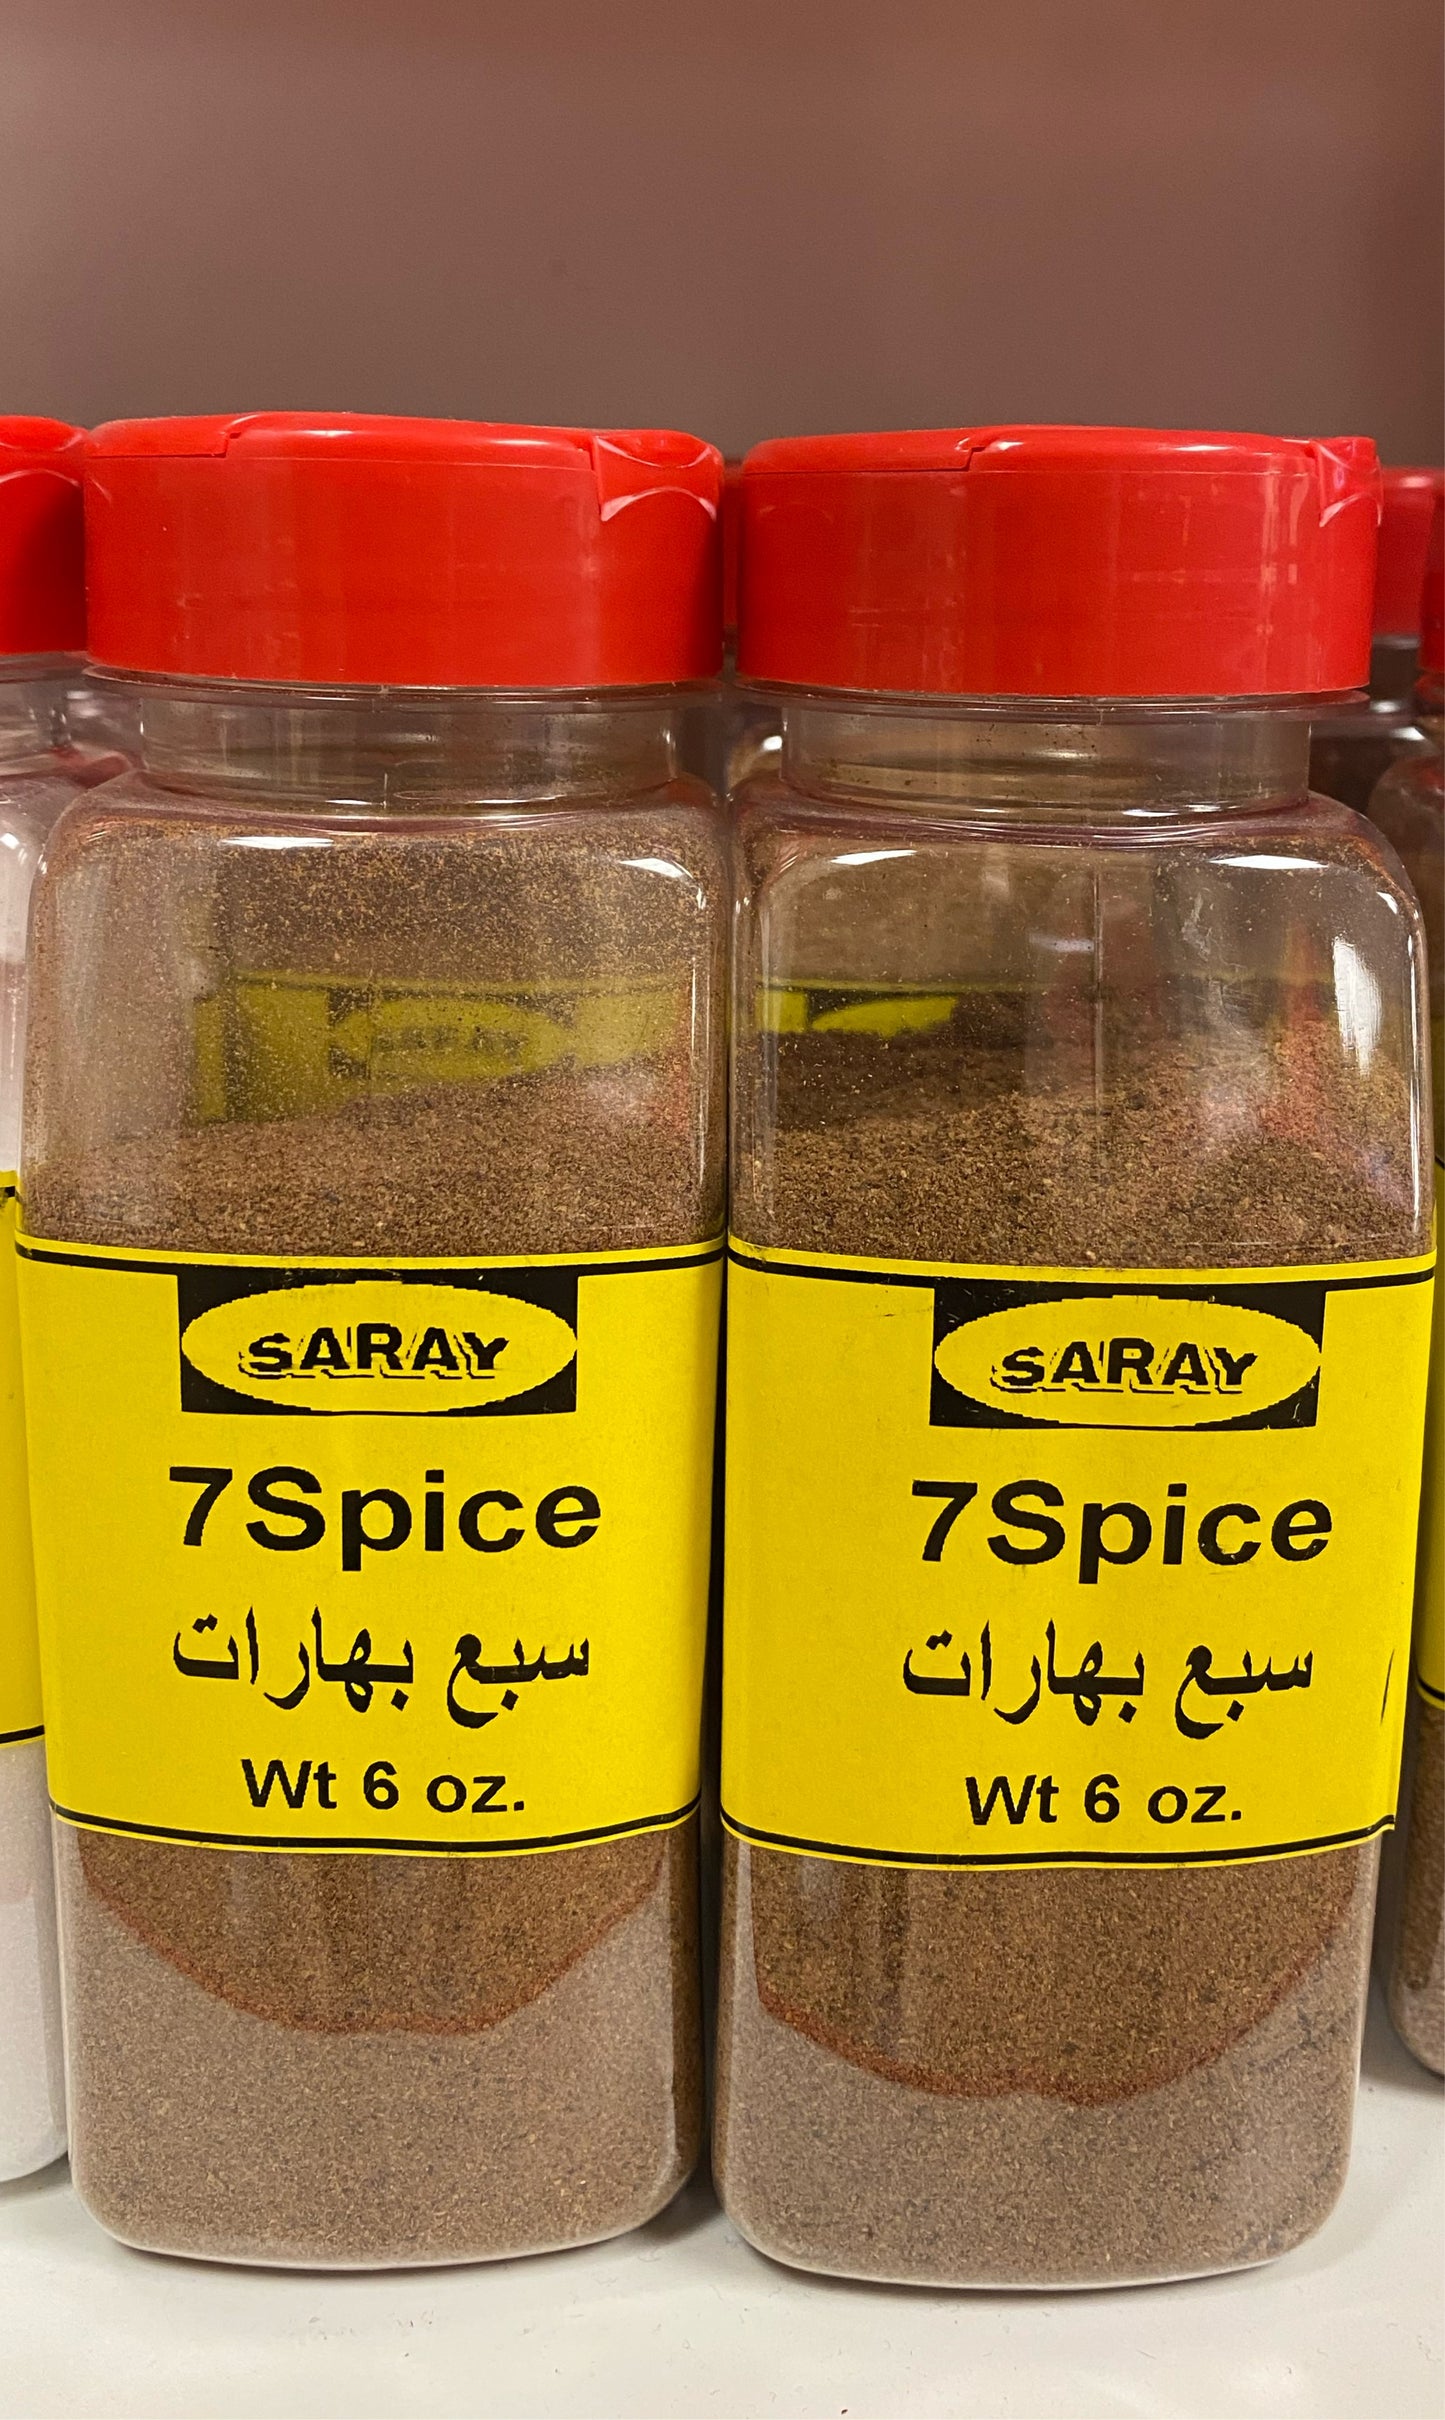 Saray 7 spice